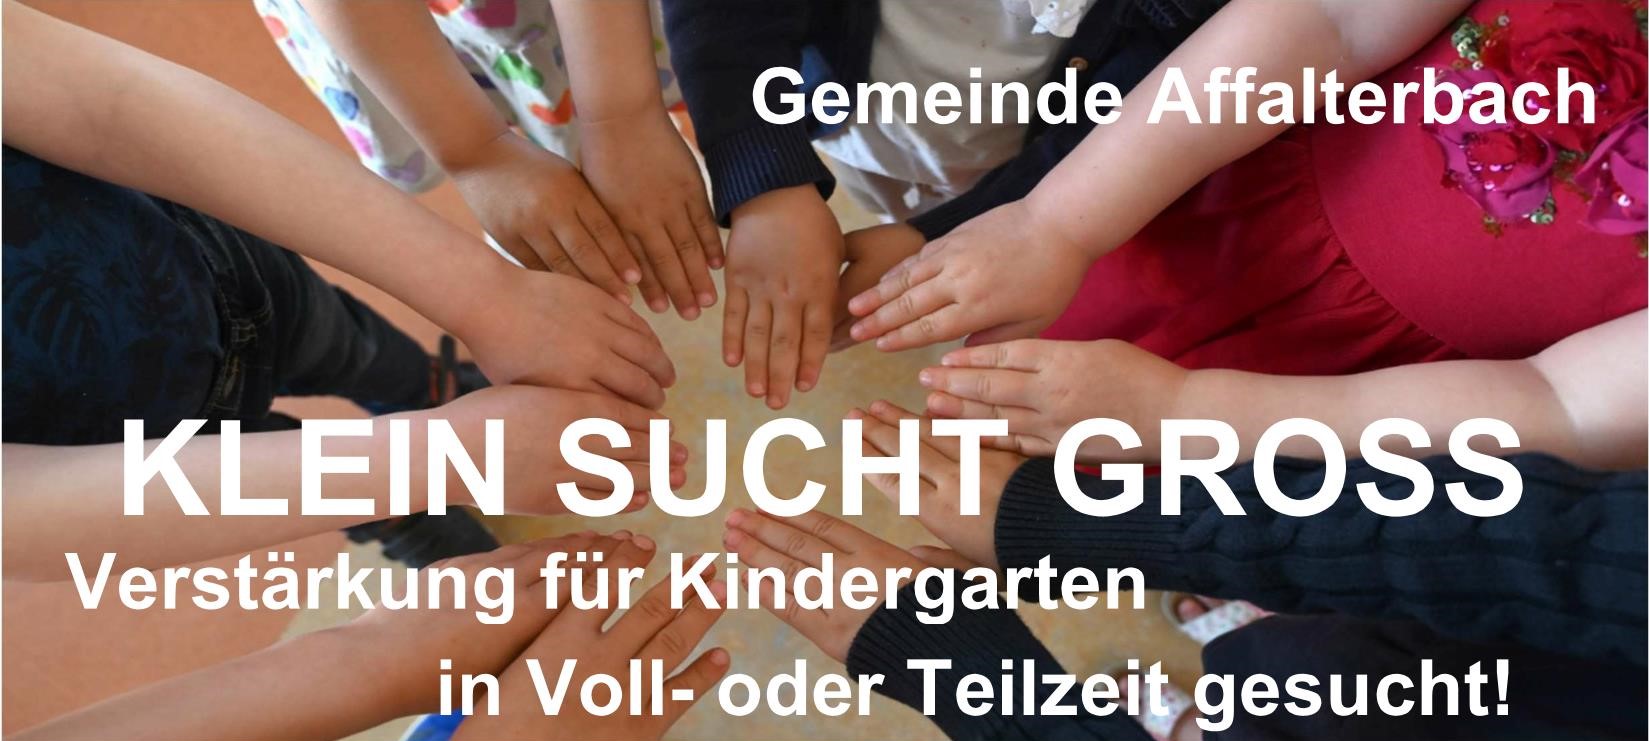  Gemeinde Affalterbach KLEIN SUCHT GROSS Verstärkung für Kindergarten in Voll- und Teilzeit gesucht! 